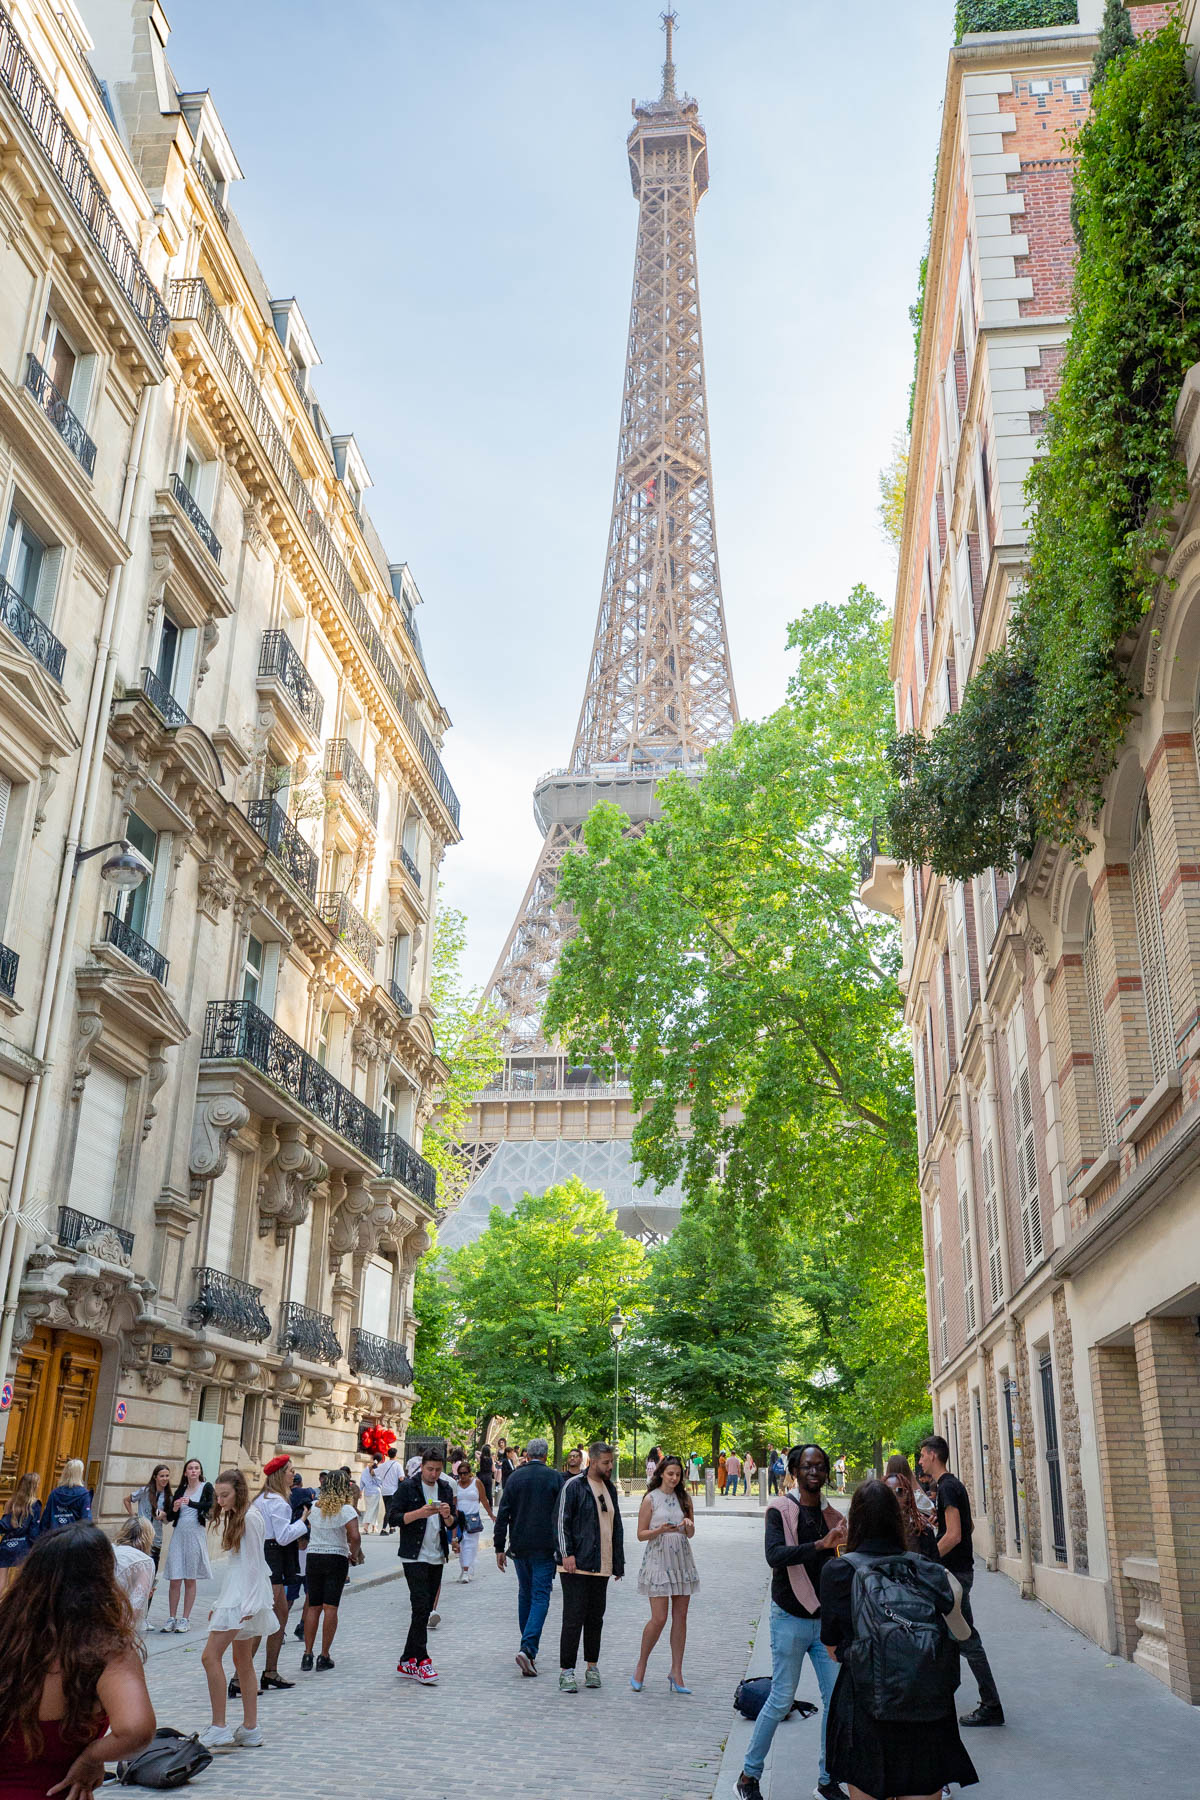 Views of the Eiffel Tower from Rue de la Universitie